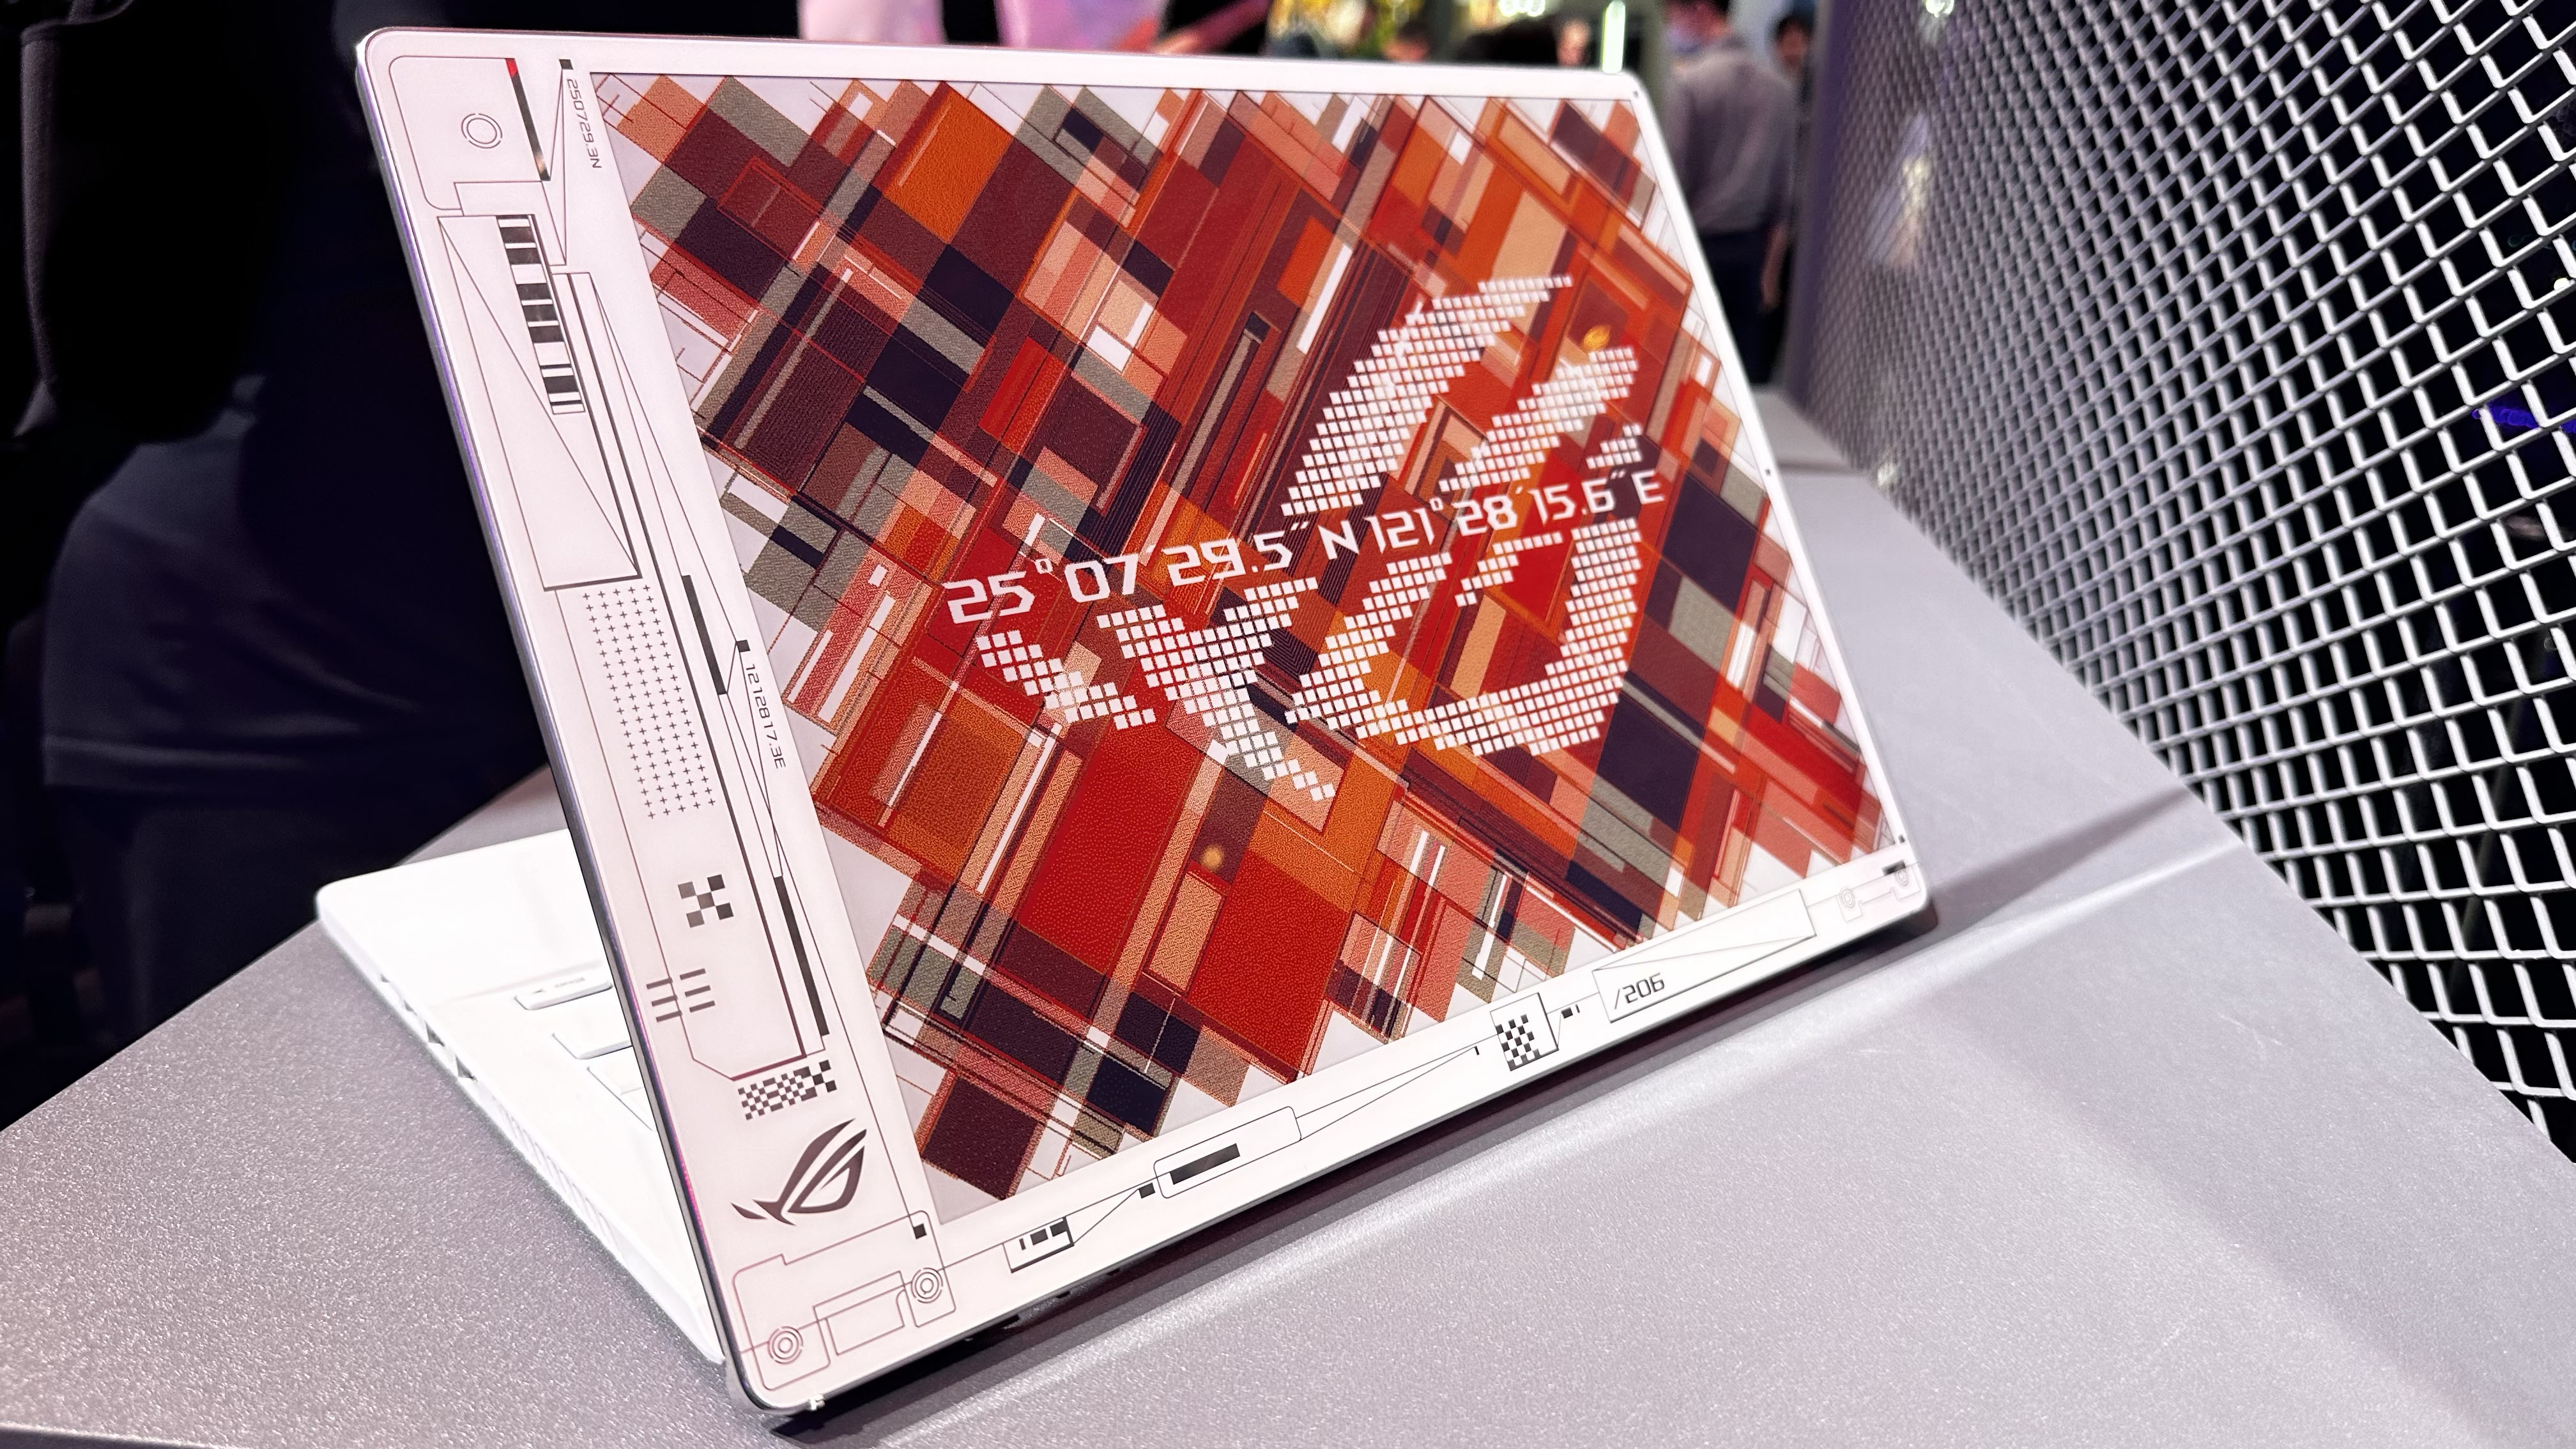 Asus ROG Concept Dali имеет самый впечатляющий дисплей с электронными чернилами, который мы когда-либо видели